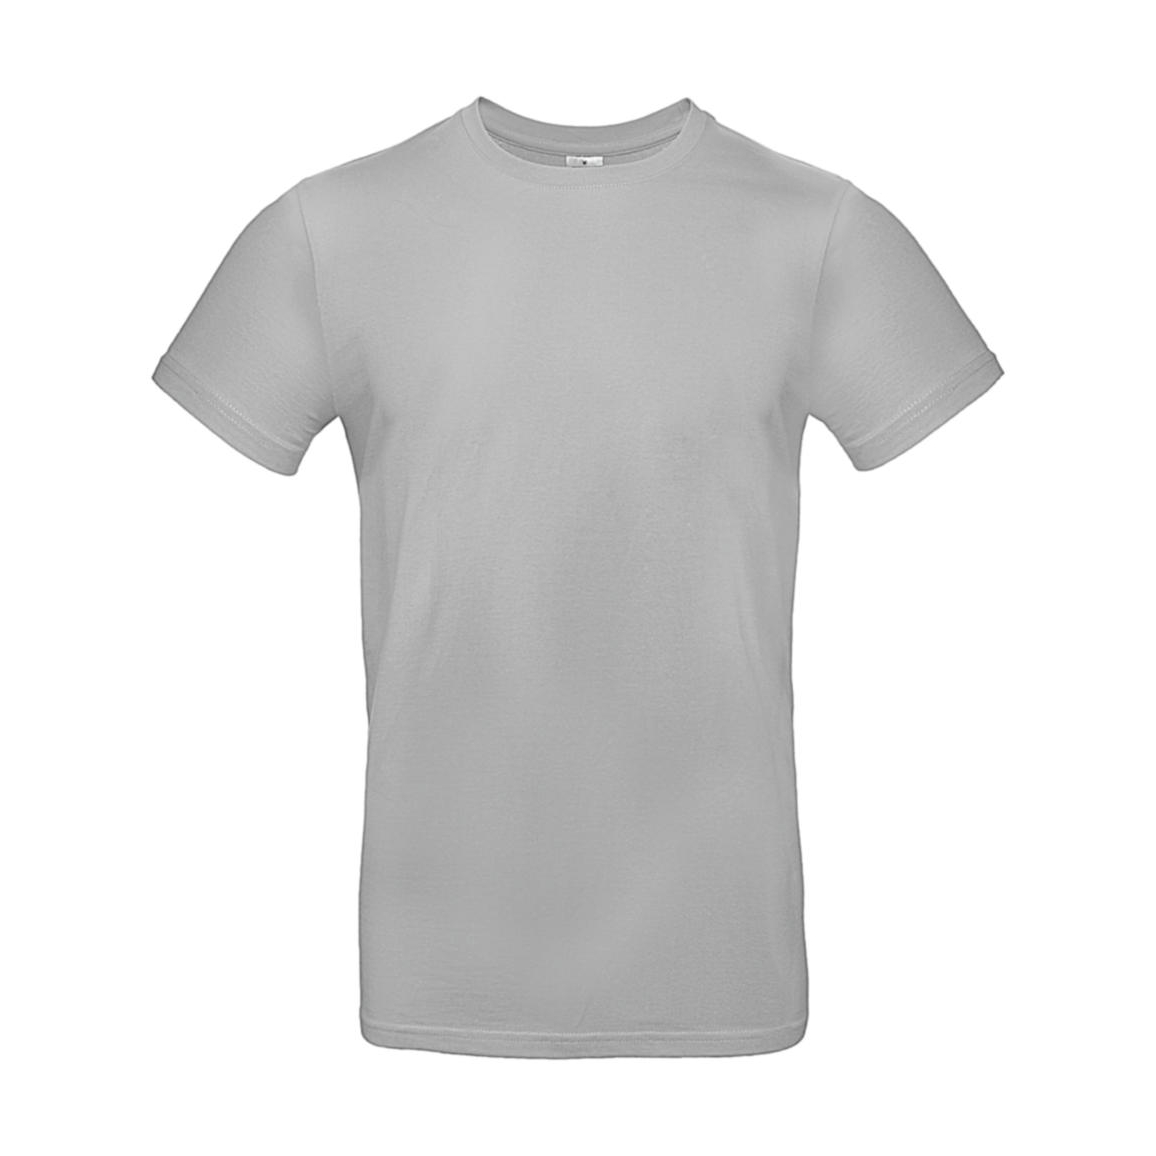 Triko pánské B&C E190 T-Shirt - šedé, 3XL